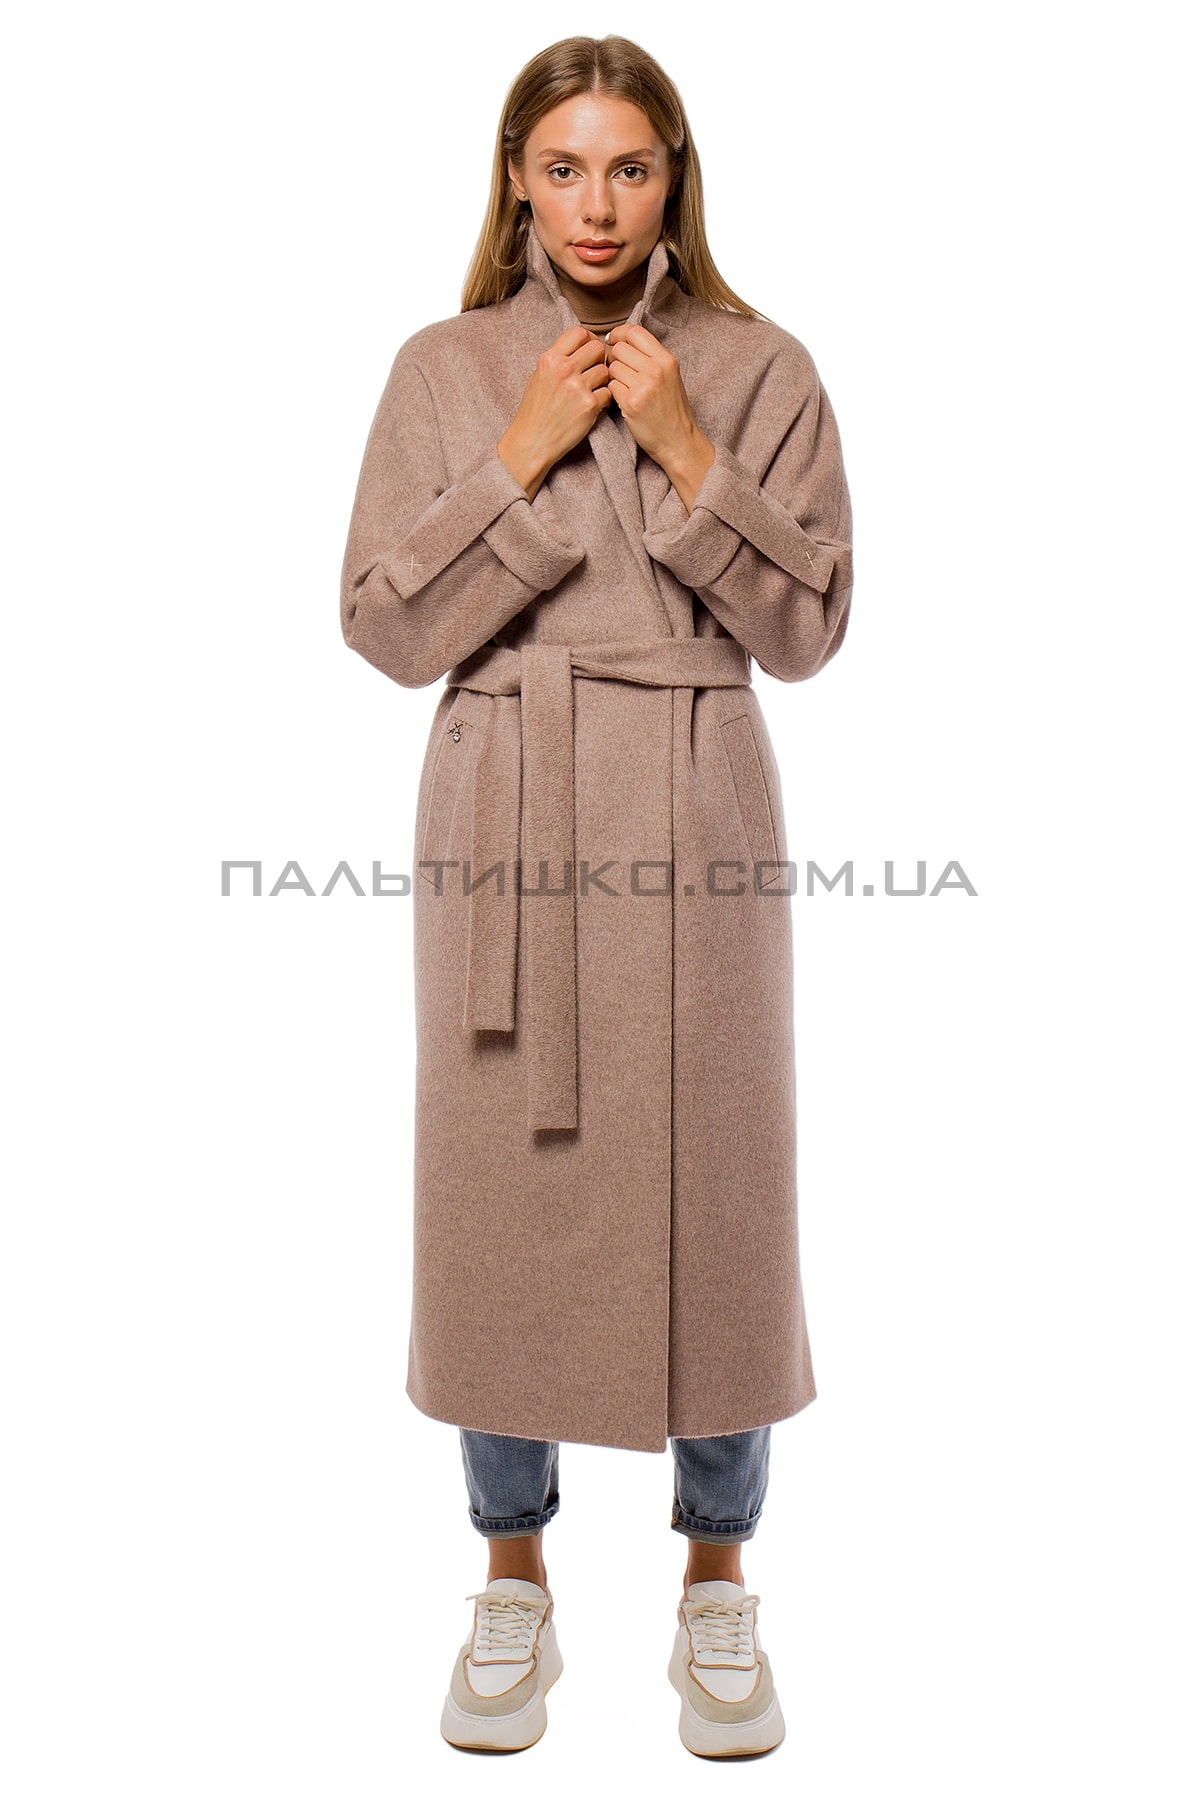  Жіноче пальто mokko